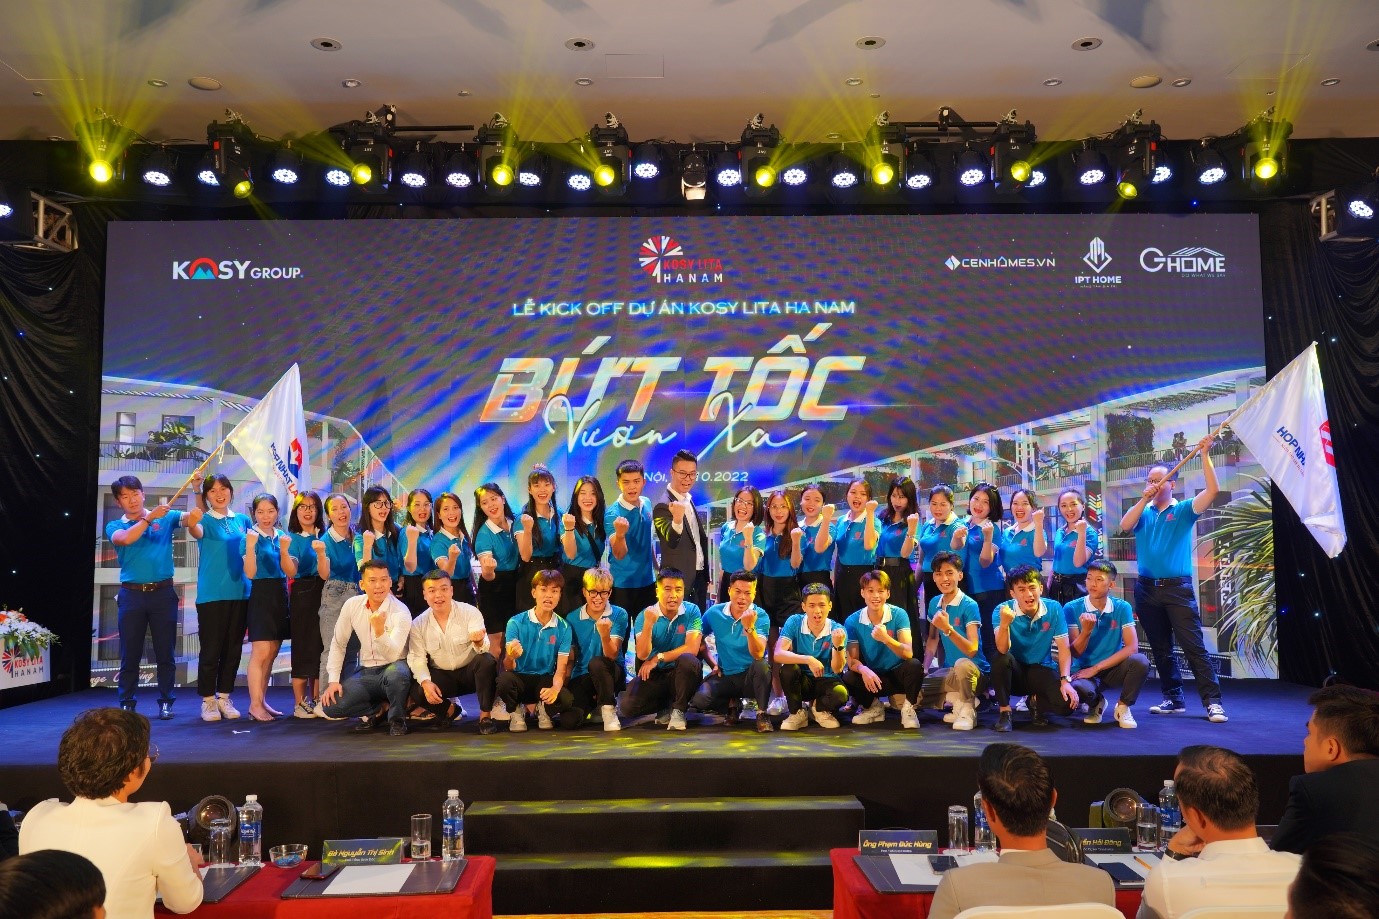 Kosy Group kích hoạt thị trường cuối năm với Lễ kick off dự án Kosy Lita Ha Nam